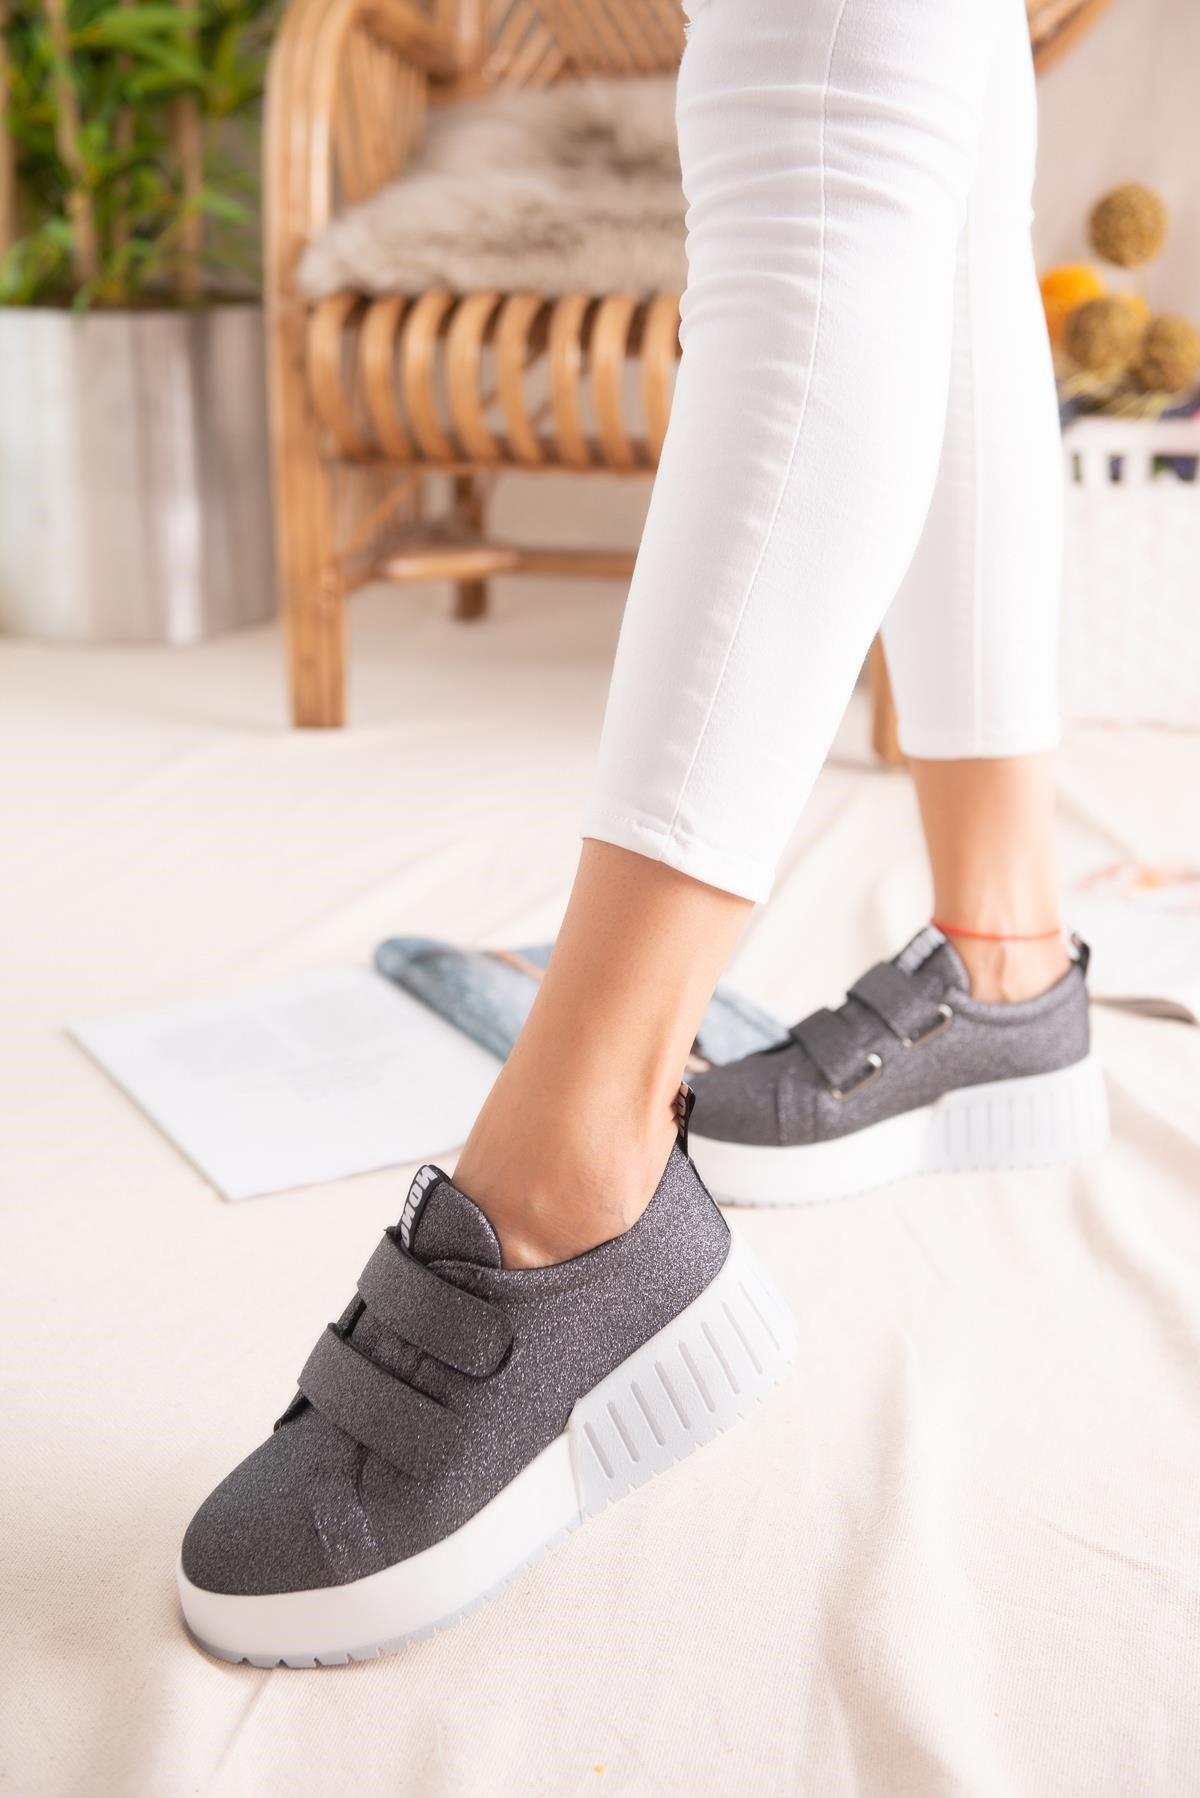 Julia Platin Simli Çift Bantlı Yüksek Tabanlı Sneakers Spor Ayakkabı